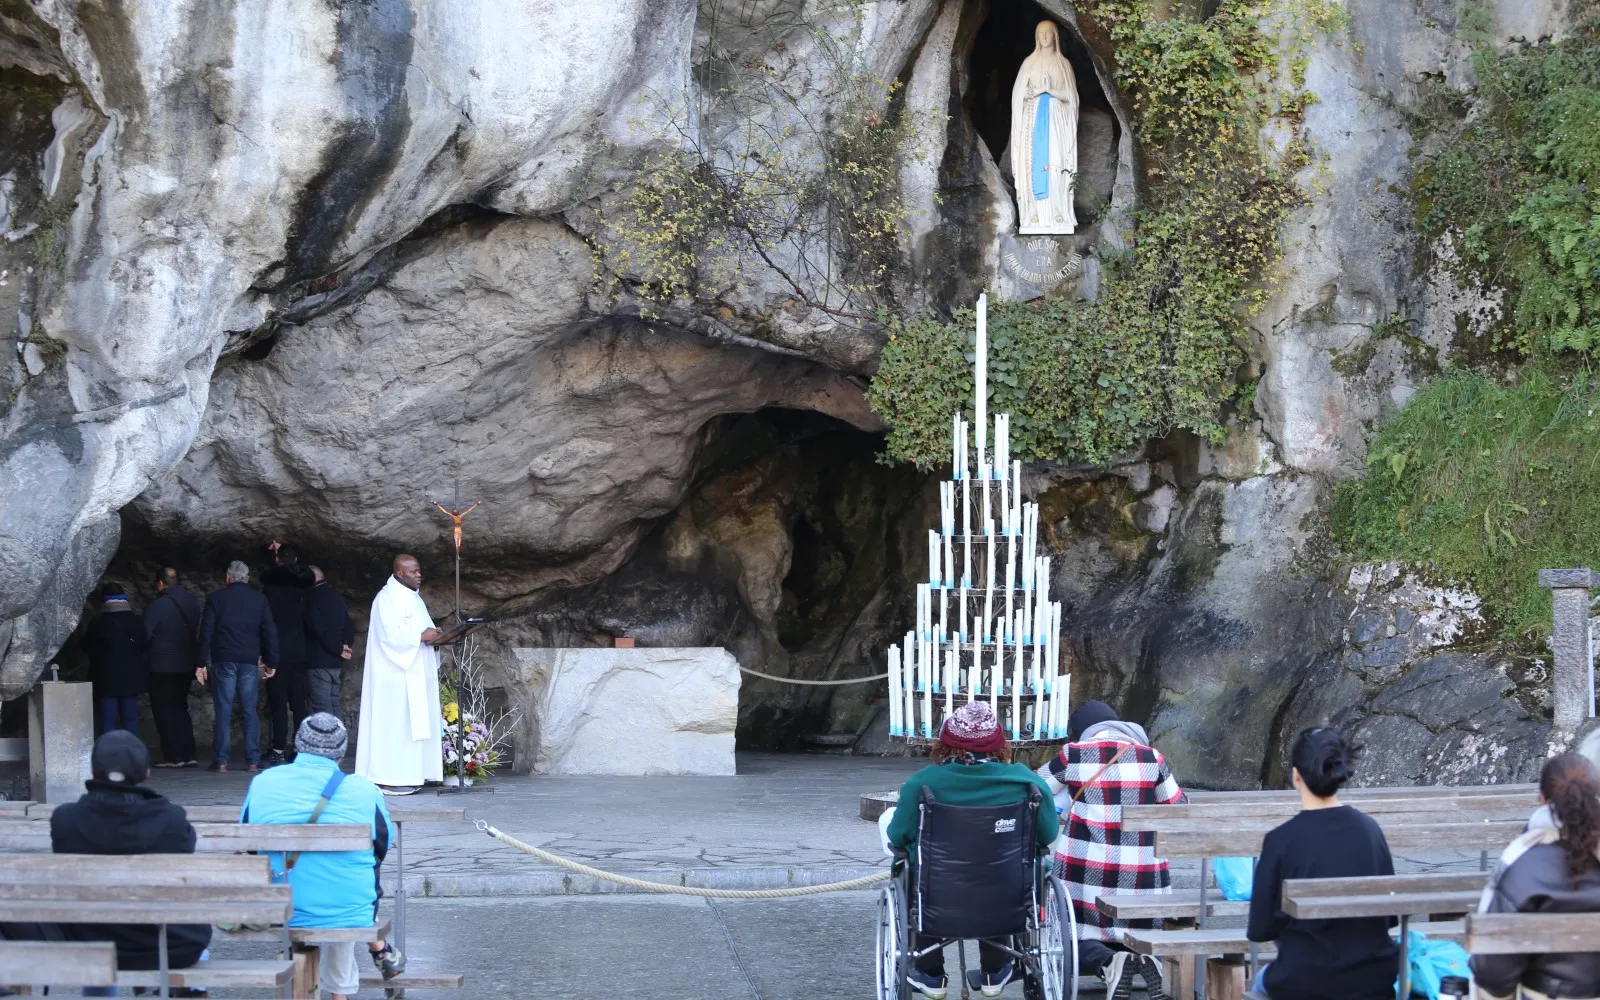 Tres millones de peregrinos acuden cada año a la gruta de Lourdes donde se apareció la Virgen María.?w=200&h=150